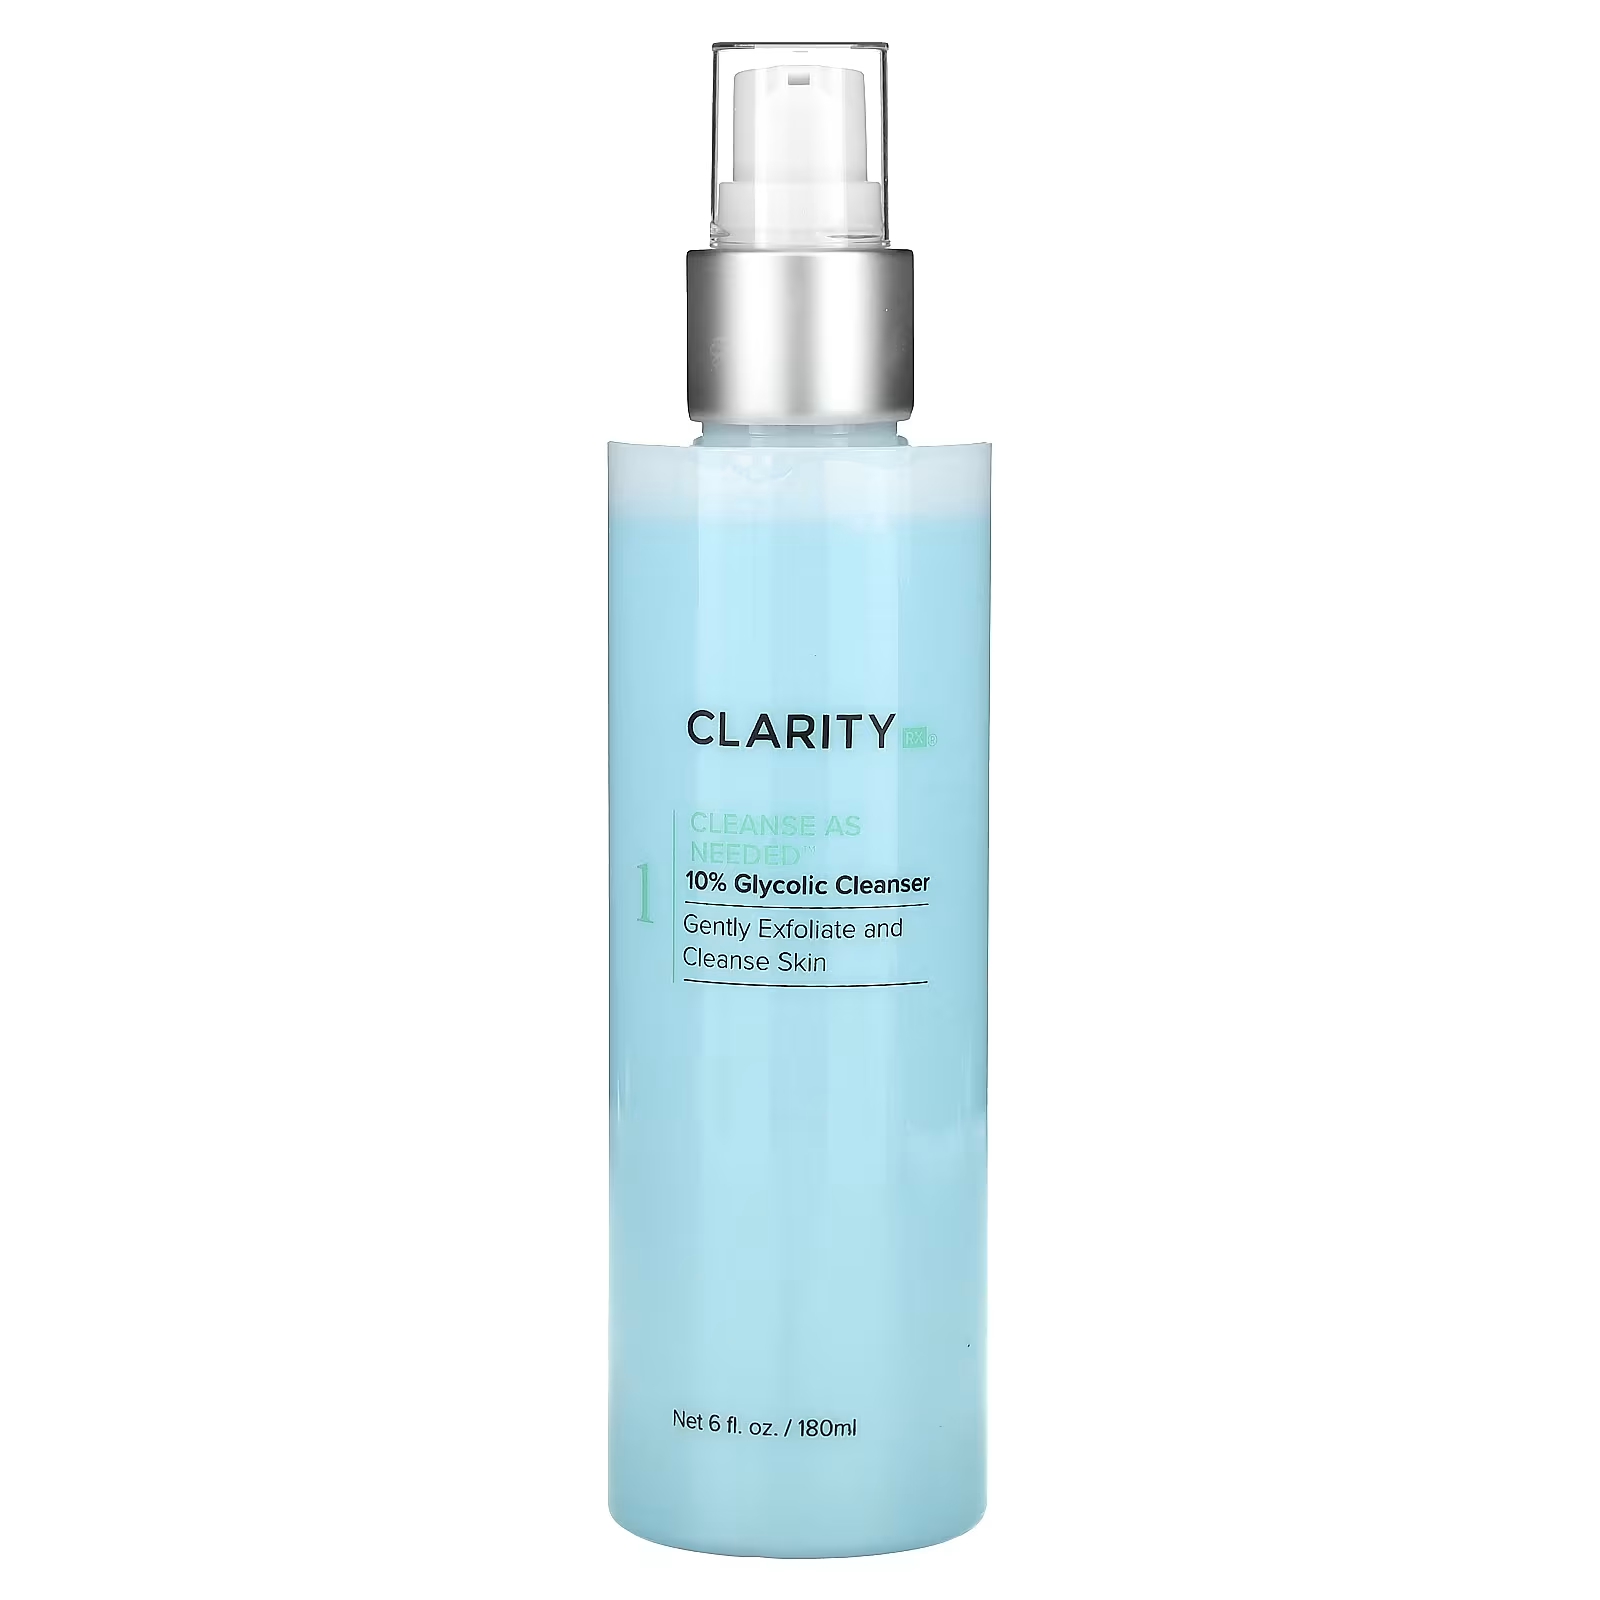 ClarityRx Cleanse по мере необходимости, 6 жидких унций (180 мл) eva naturals anti aging очищающее средство для лица с гликолевой кислотой 6 унций